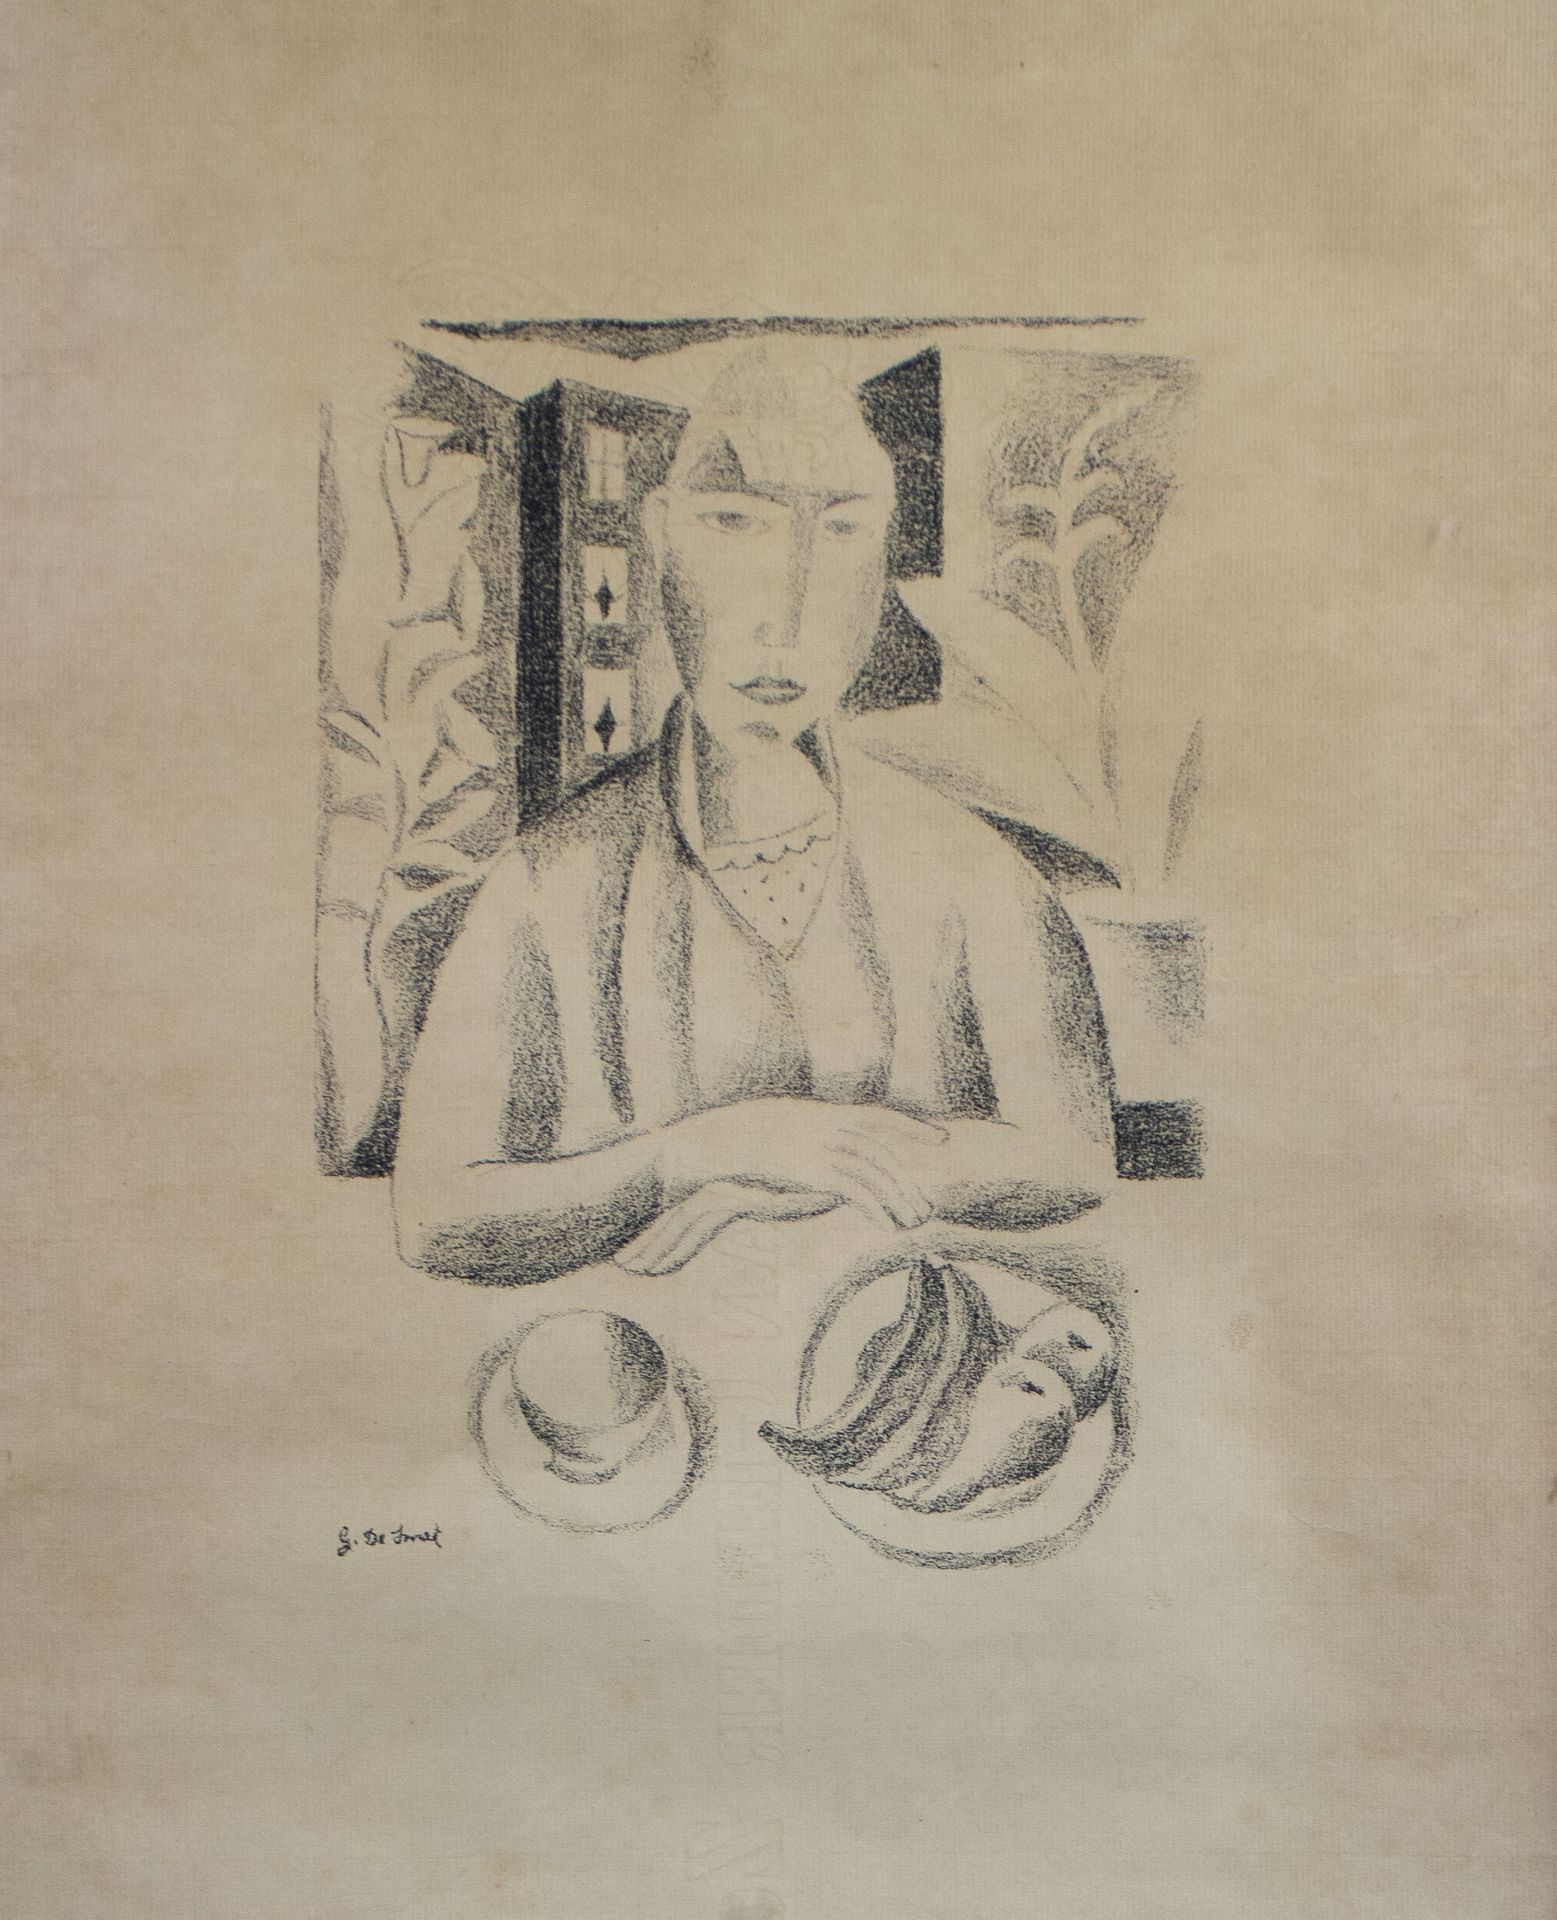 GUSTAVE DE SMET (1877-1943) 石版画，在版上签名。石版画，在版上签名。
28 x 19.5 cm